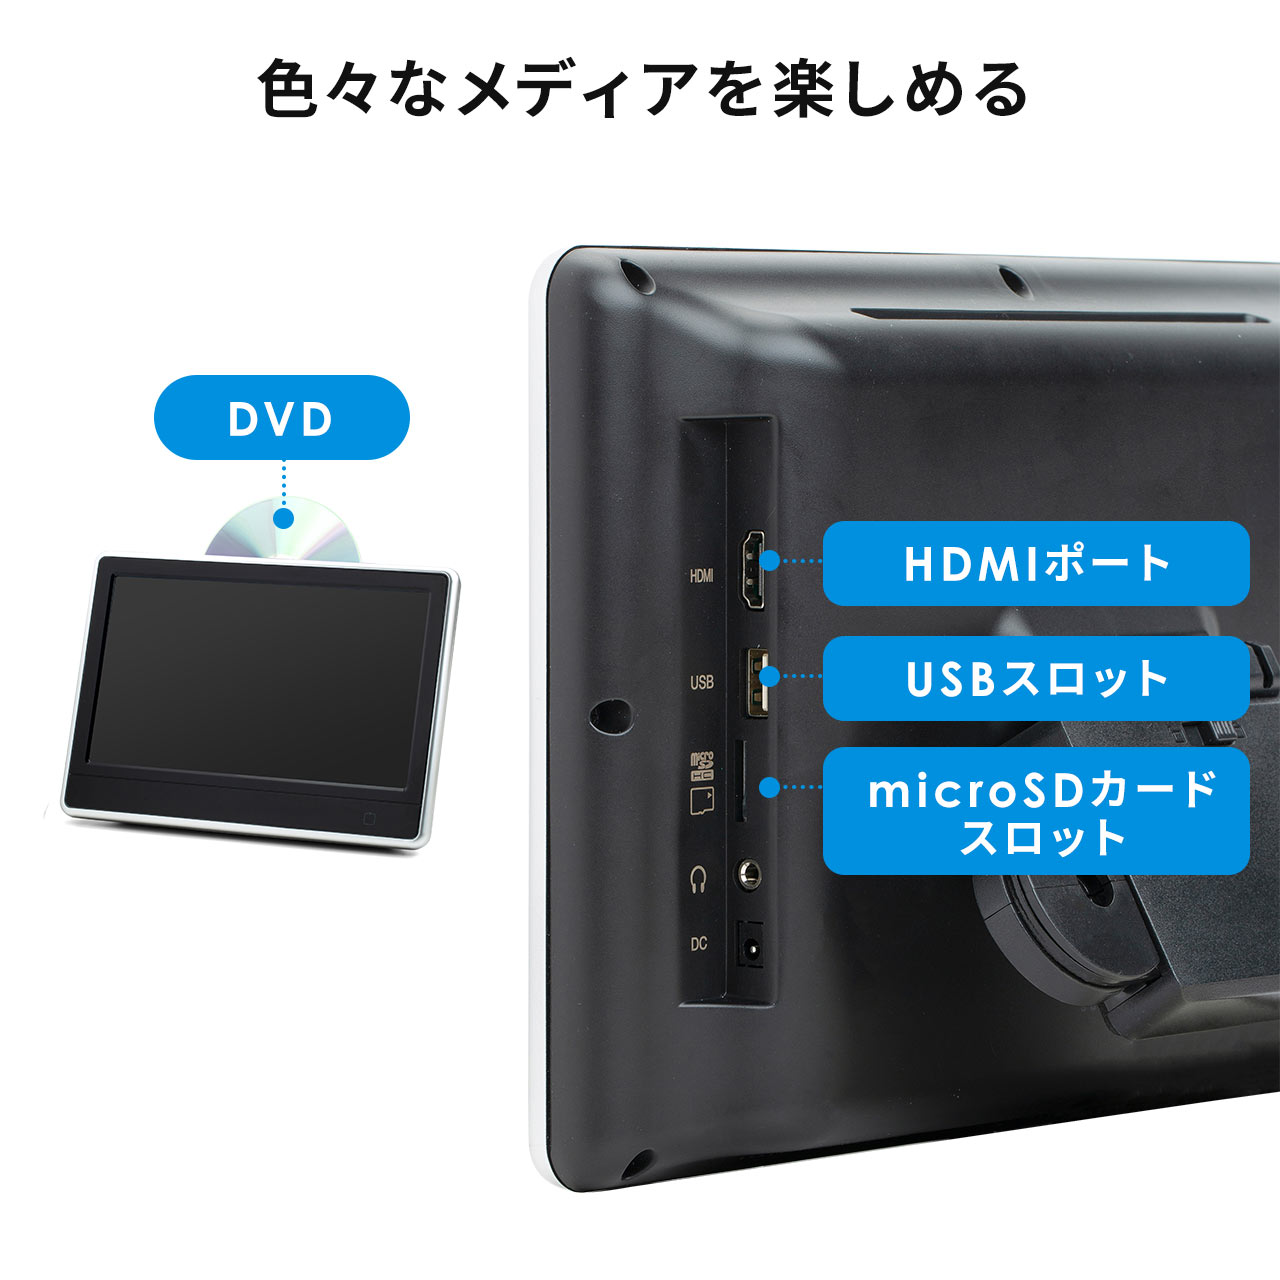 ԍڃwbhXgj^[ DVDv[[ HDMI microSD USB[Đ@\ 200-CAR073